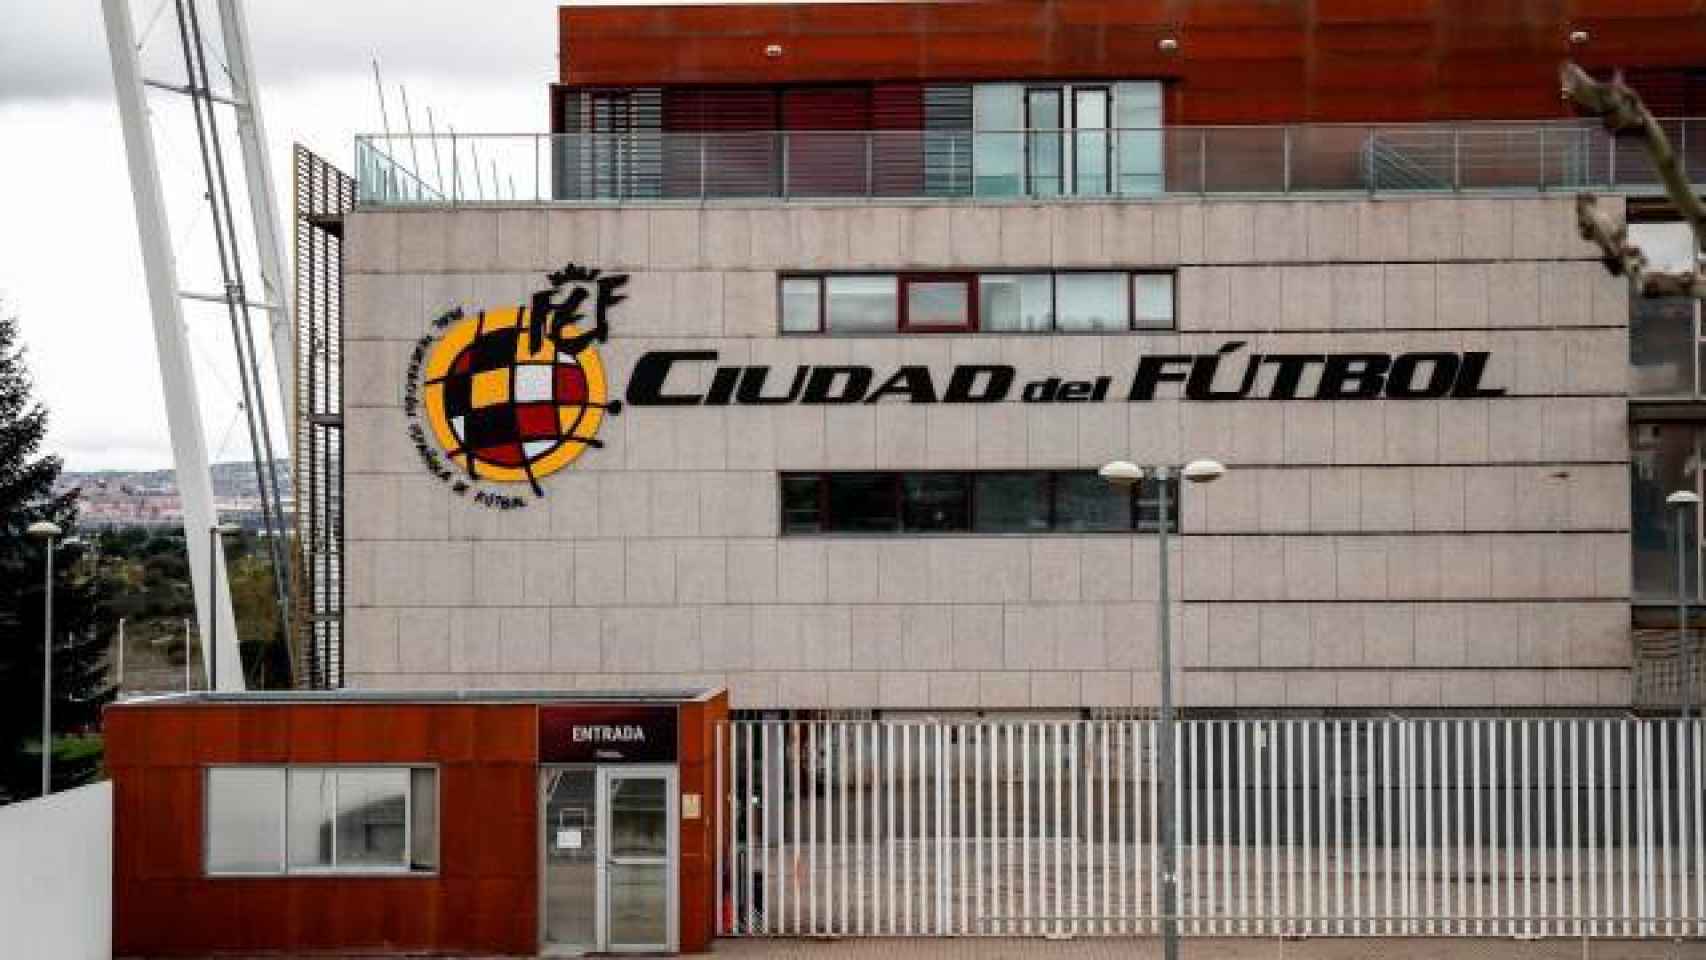 El exterior de la Ciudad del Fútbol de Las Rozas, sede de la Real Federación Española de Fútbol